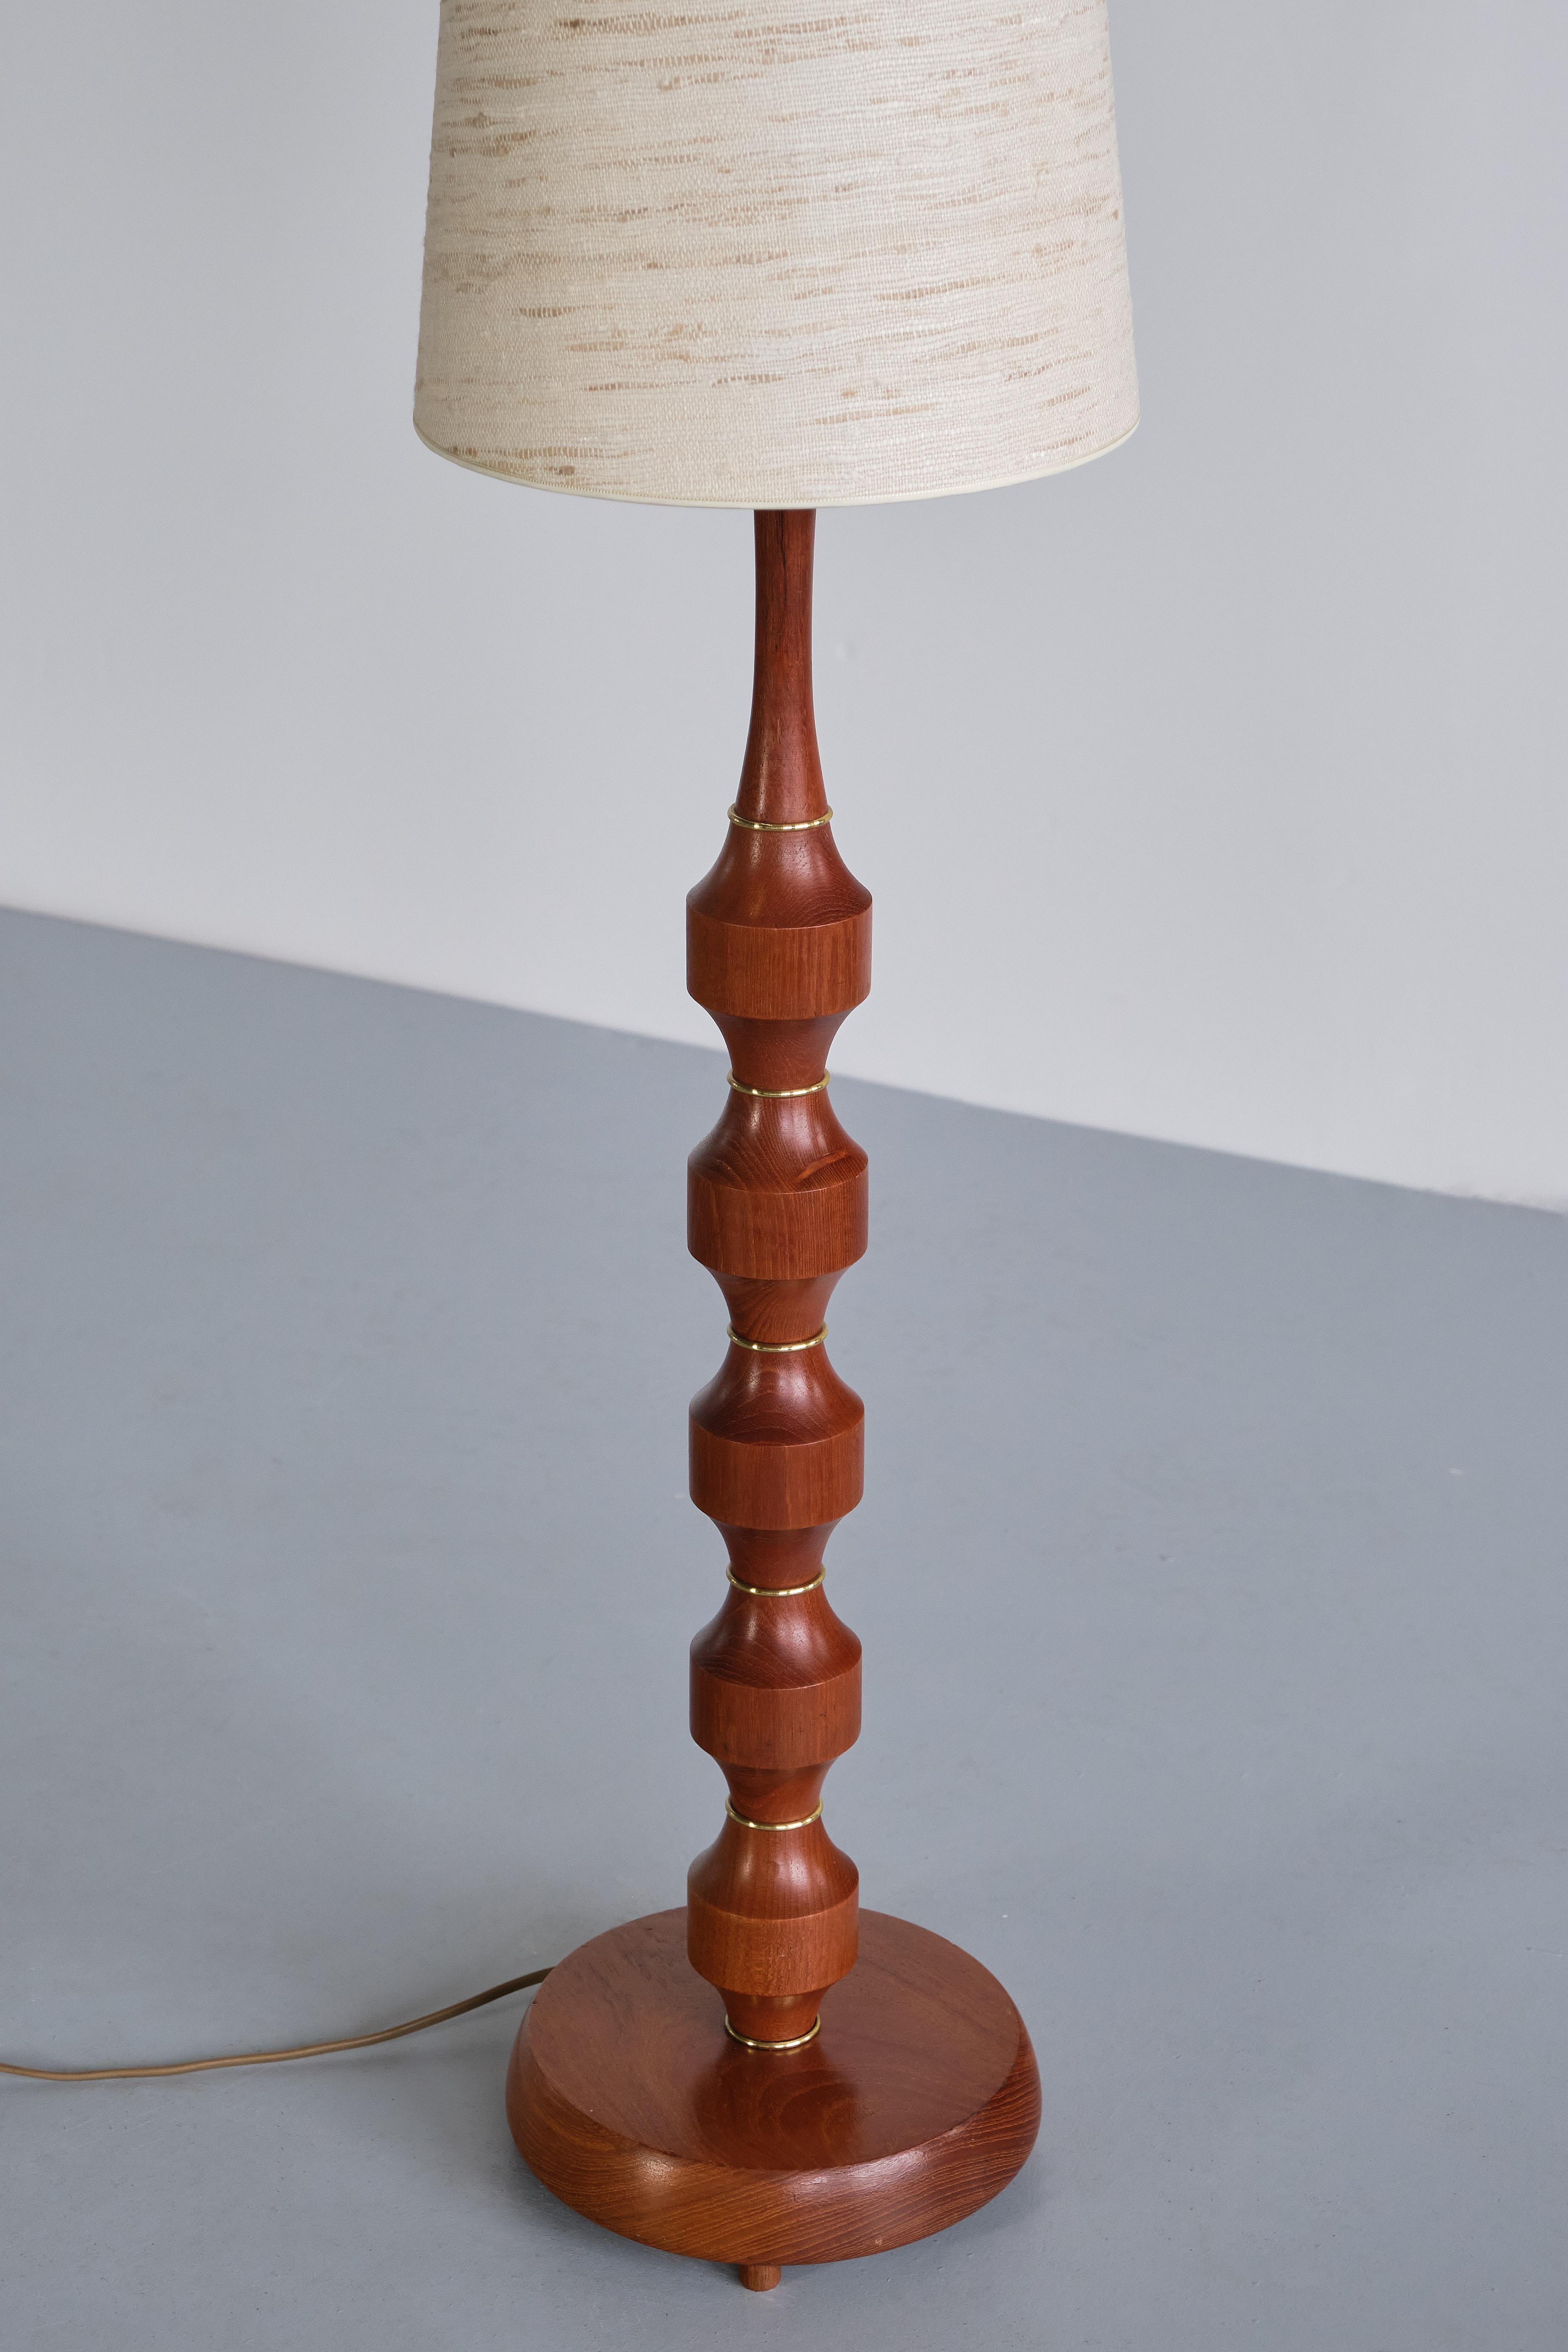 Möllers Armatur Eskilstuna Floor/ Table Lamp in Teak, Brass, Silk, Sweden, 1950s For Sale 2